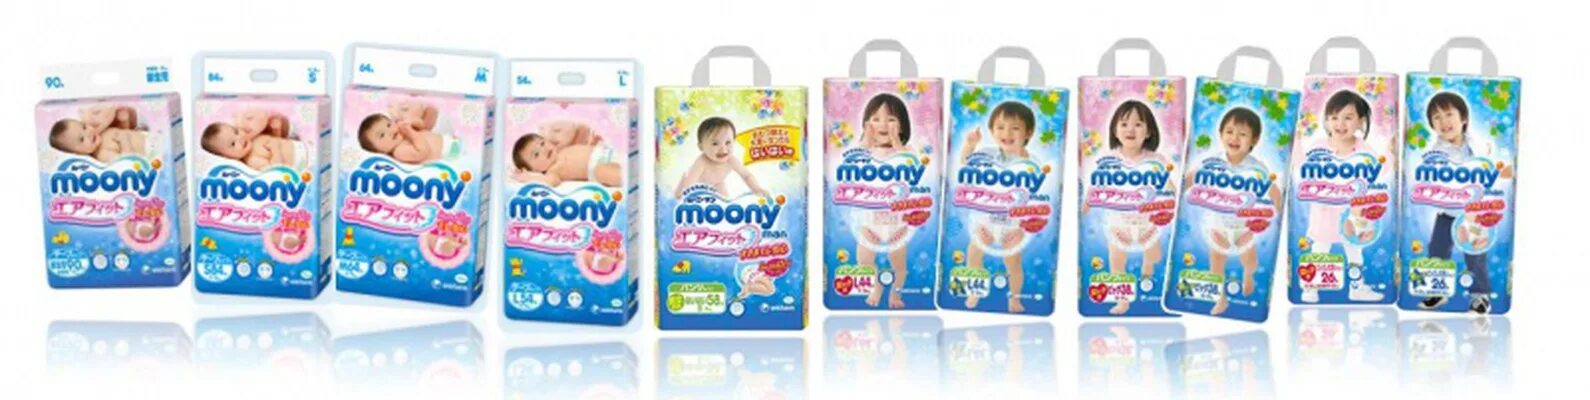 Moony Extra Soft s82. Подгузники Moony для новорожденных с вырезом для пупка. Moony xxl